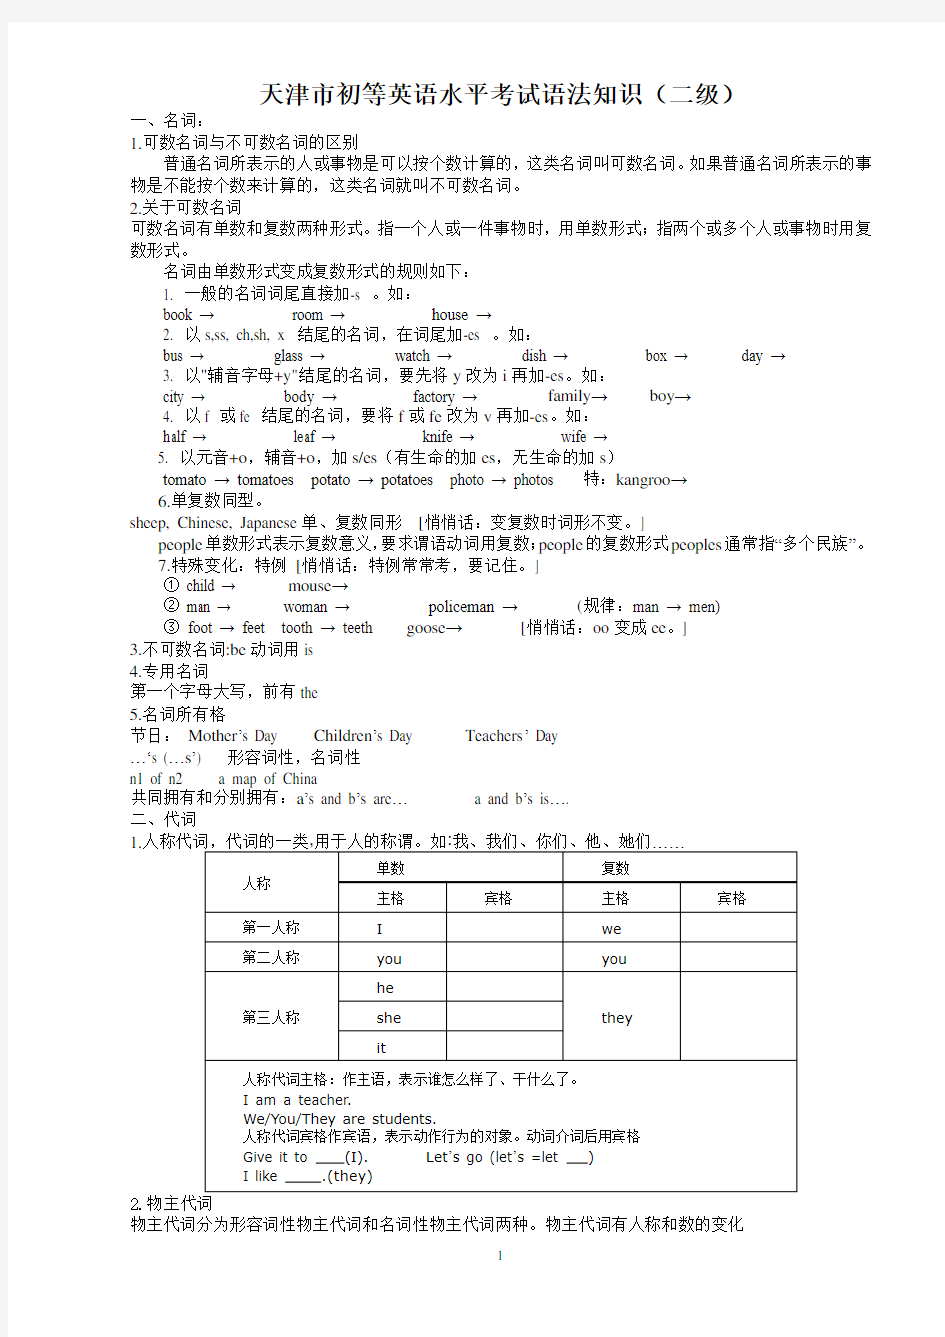 天津市初等英语水平考试(二级)语法知识